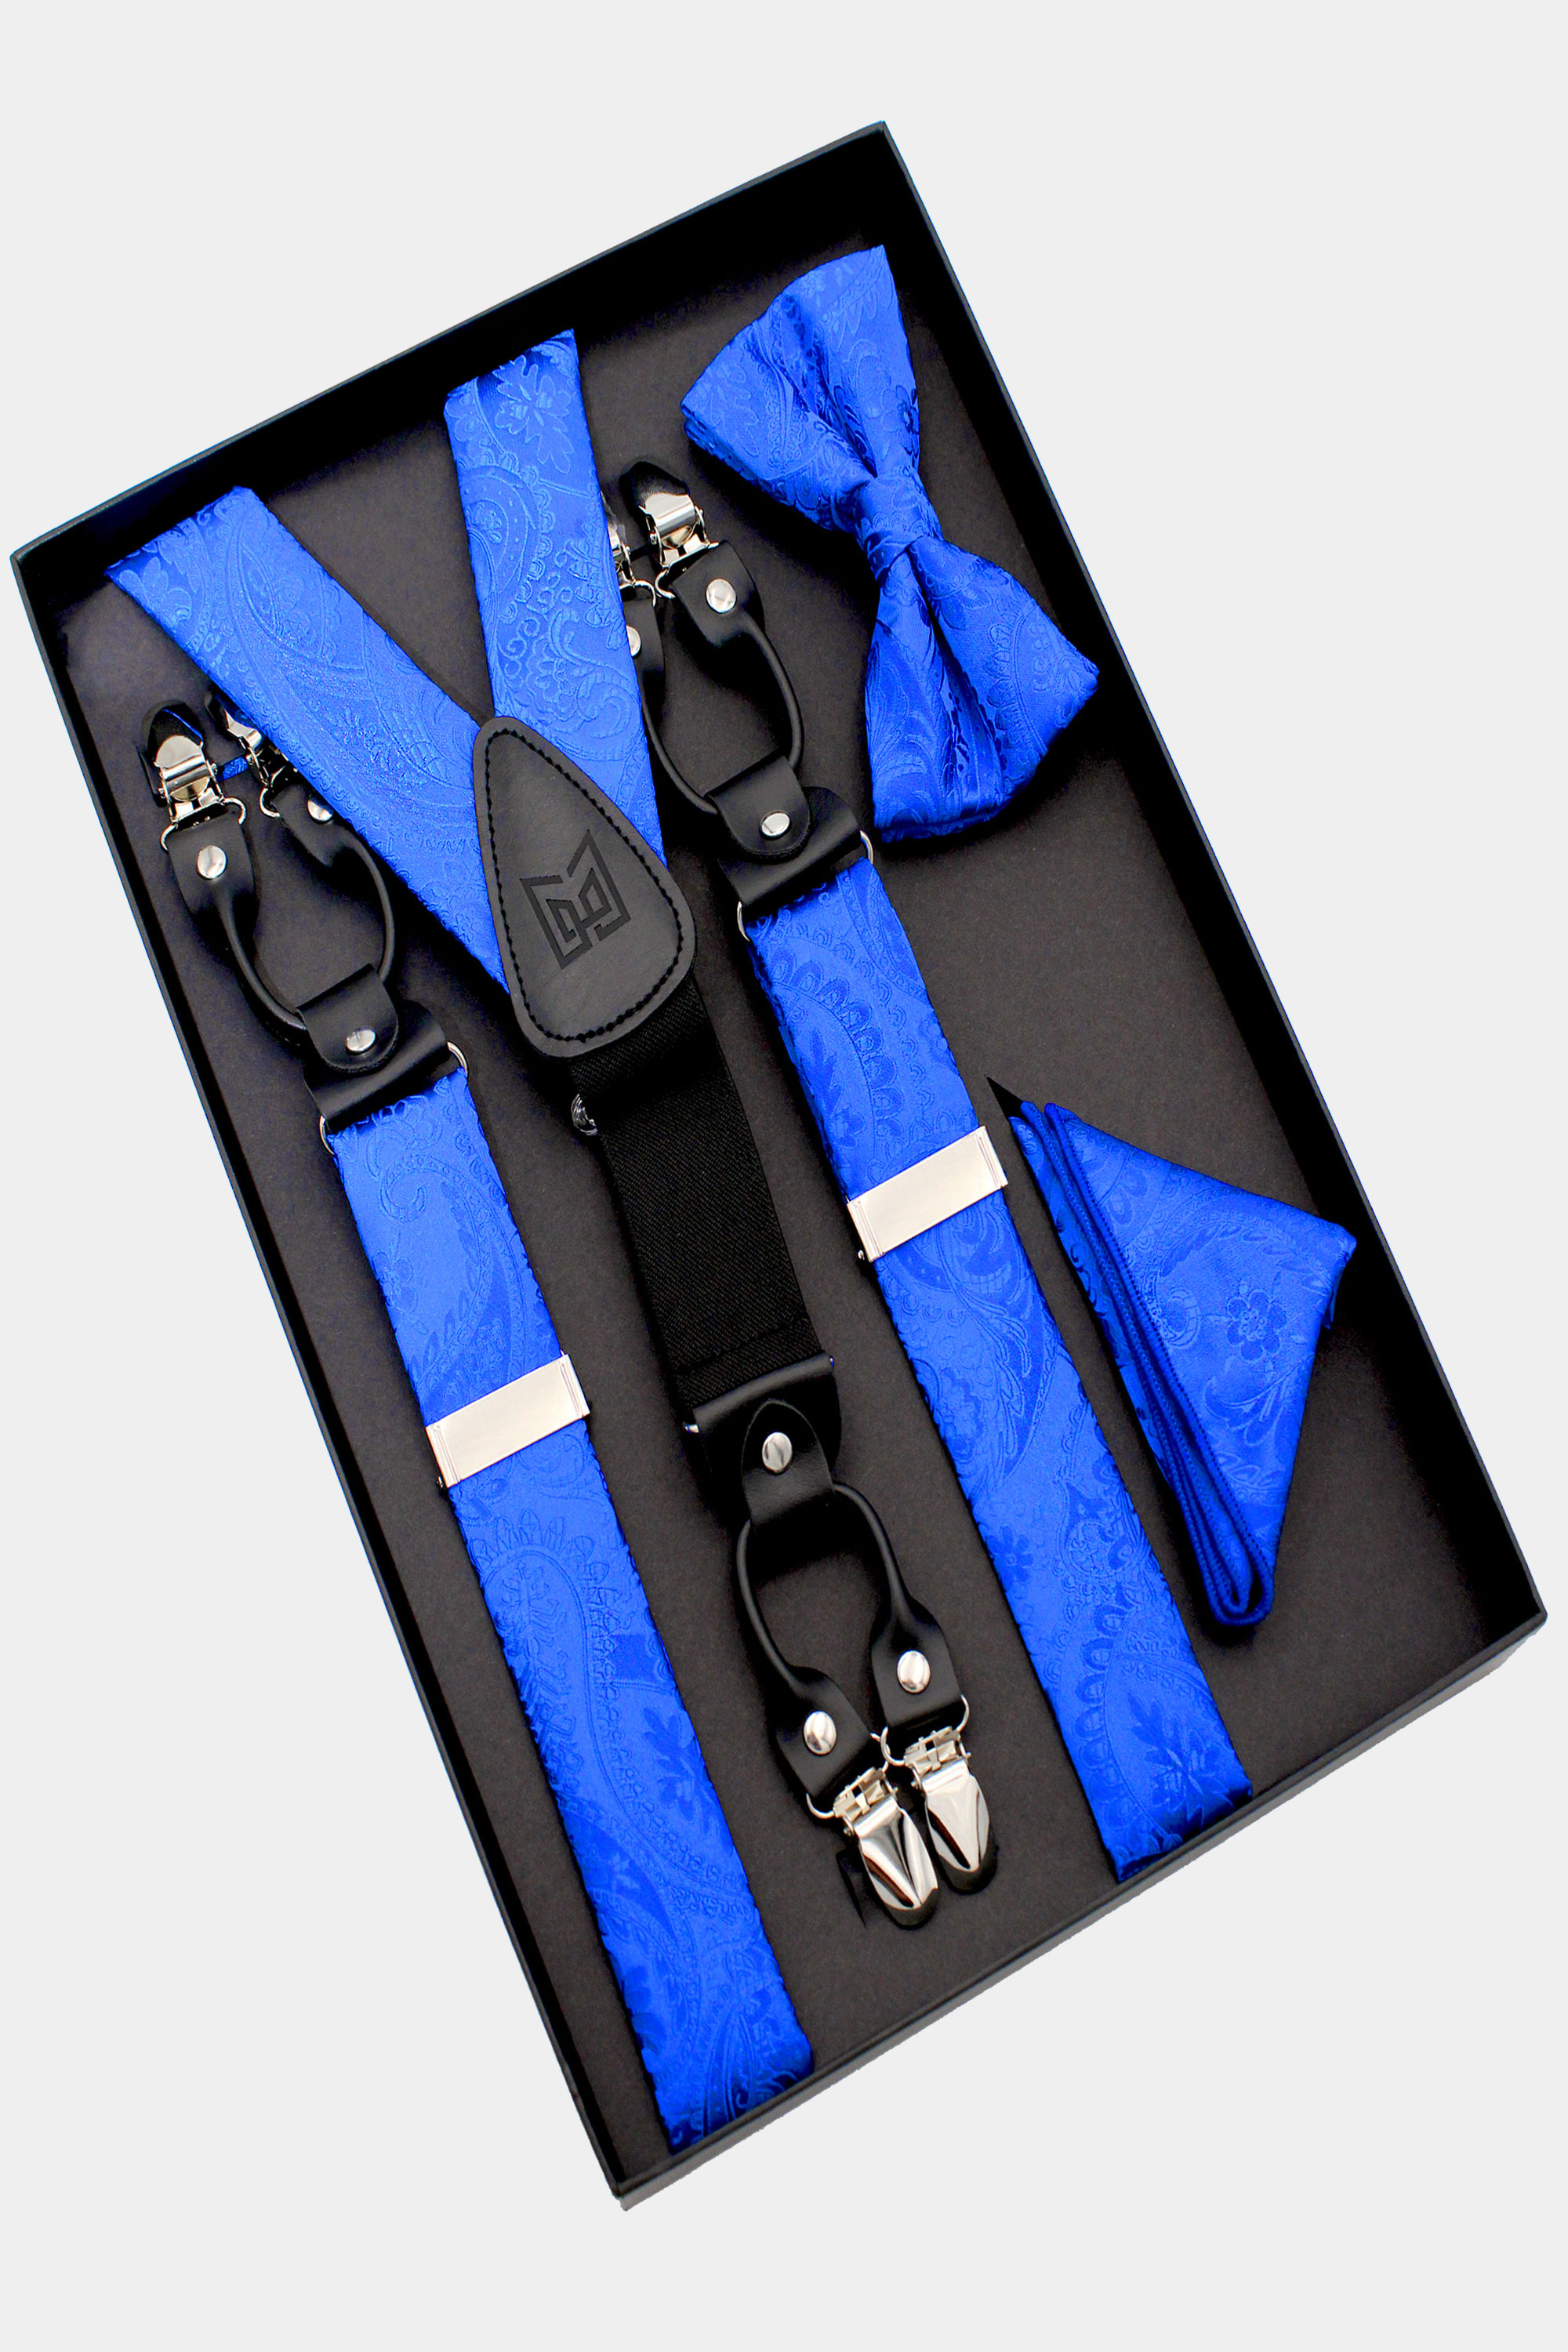 Royal-Blue-Bow-Tie-and-Suspenders-Set-Groomsmen-Wedding-Prom-from-Gentlemansguru.com